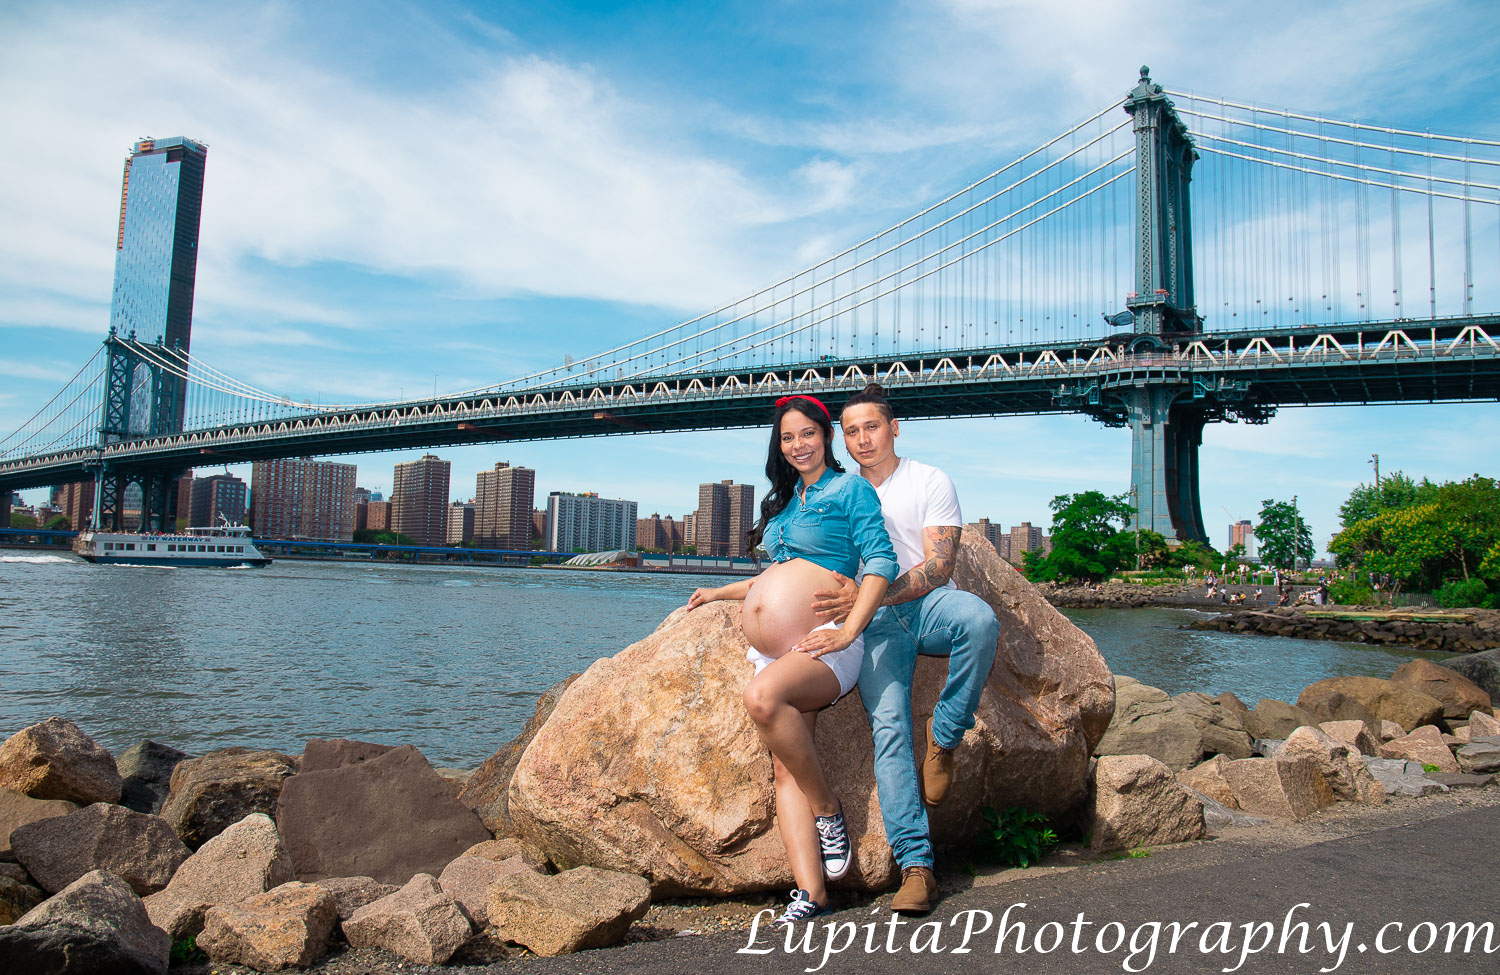 Pregnancy/maternity photographer in New York City (Brooklyn, Bronx, Queens, Staten Island, Manhattan). Fotografía de embarazos/maternidad en la ciudad de Nueva York. www.LupitaPhotography.com